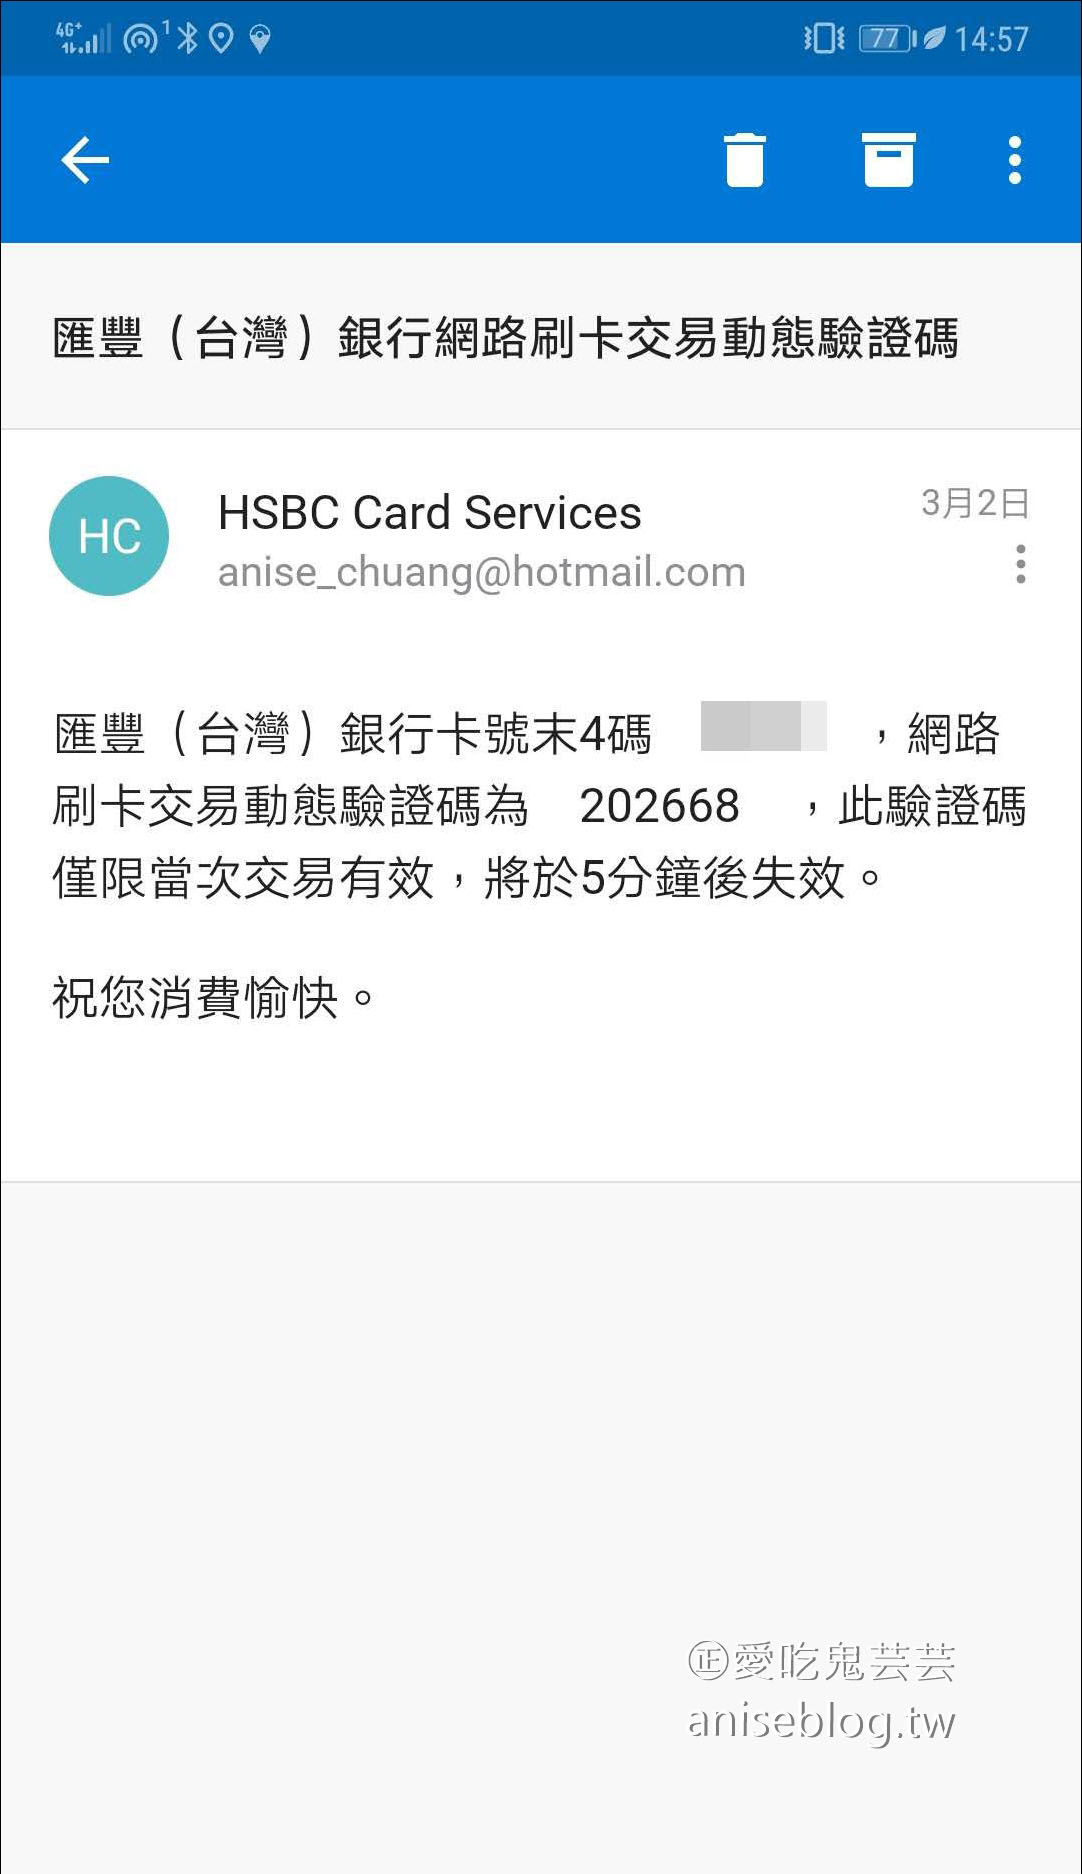 HSBC 滙豐銀行現金回饋御璽卡，現金回饋最實際 (海外消費2.22%、國內1.22%)